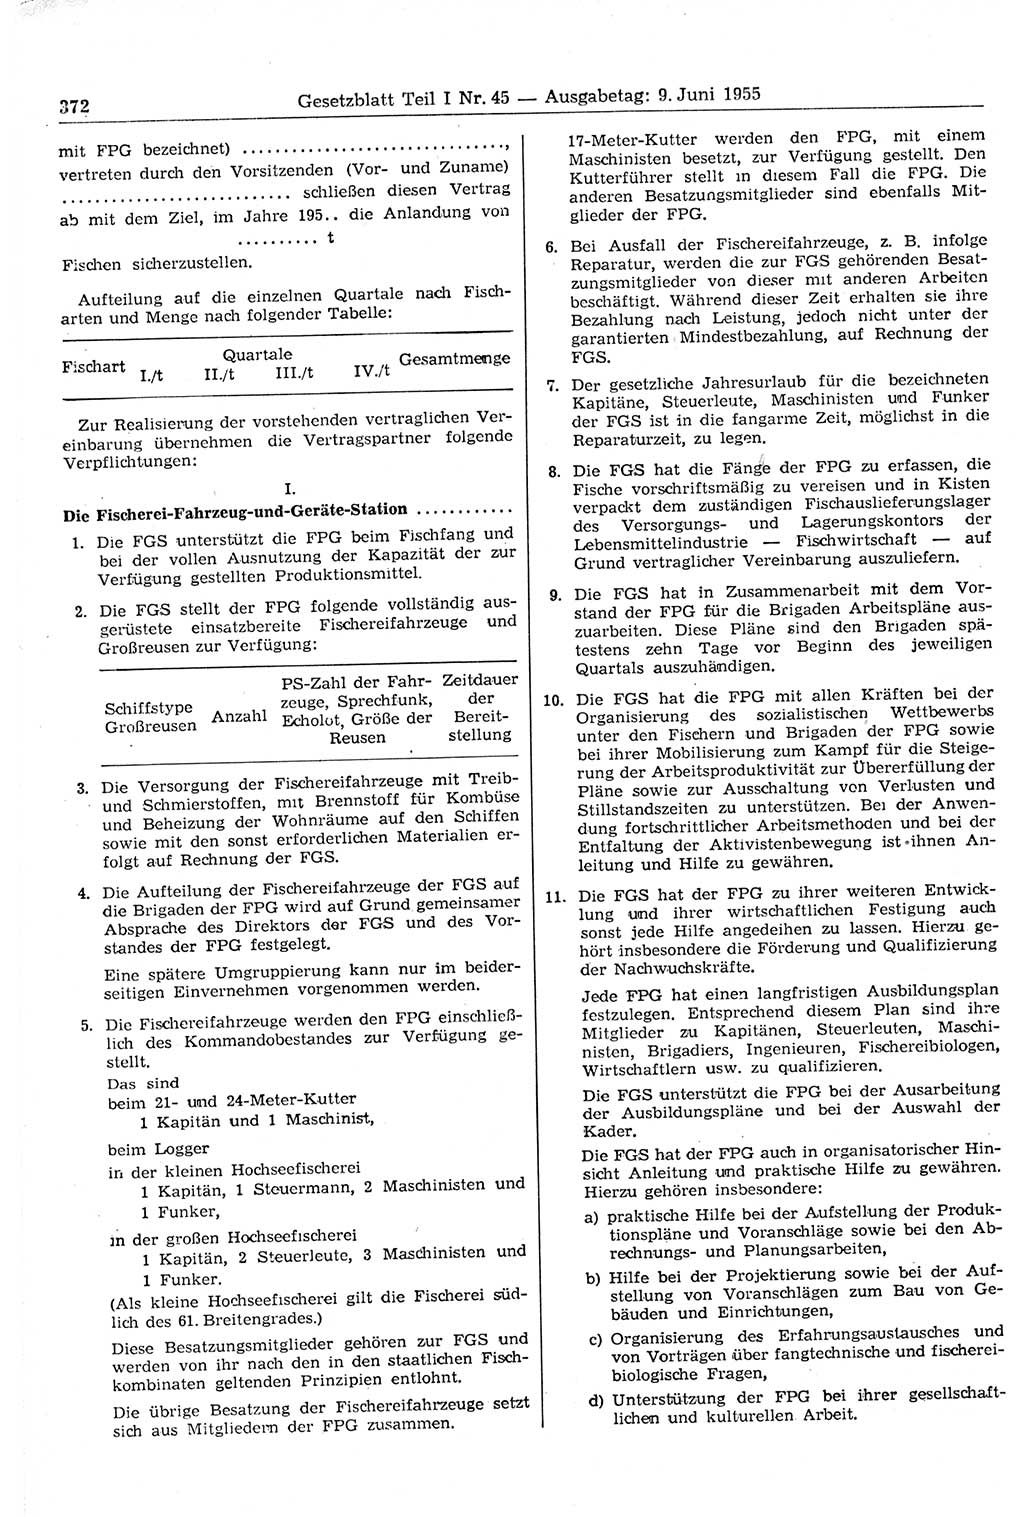 Gesetzblatt (GBl.) der Deutschen Demokratischen Republik (DDR) Teil Ⅰ 1955, Seite 372 (GBl. DDR Ⅰ 1955, S. 372)